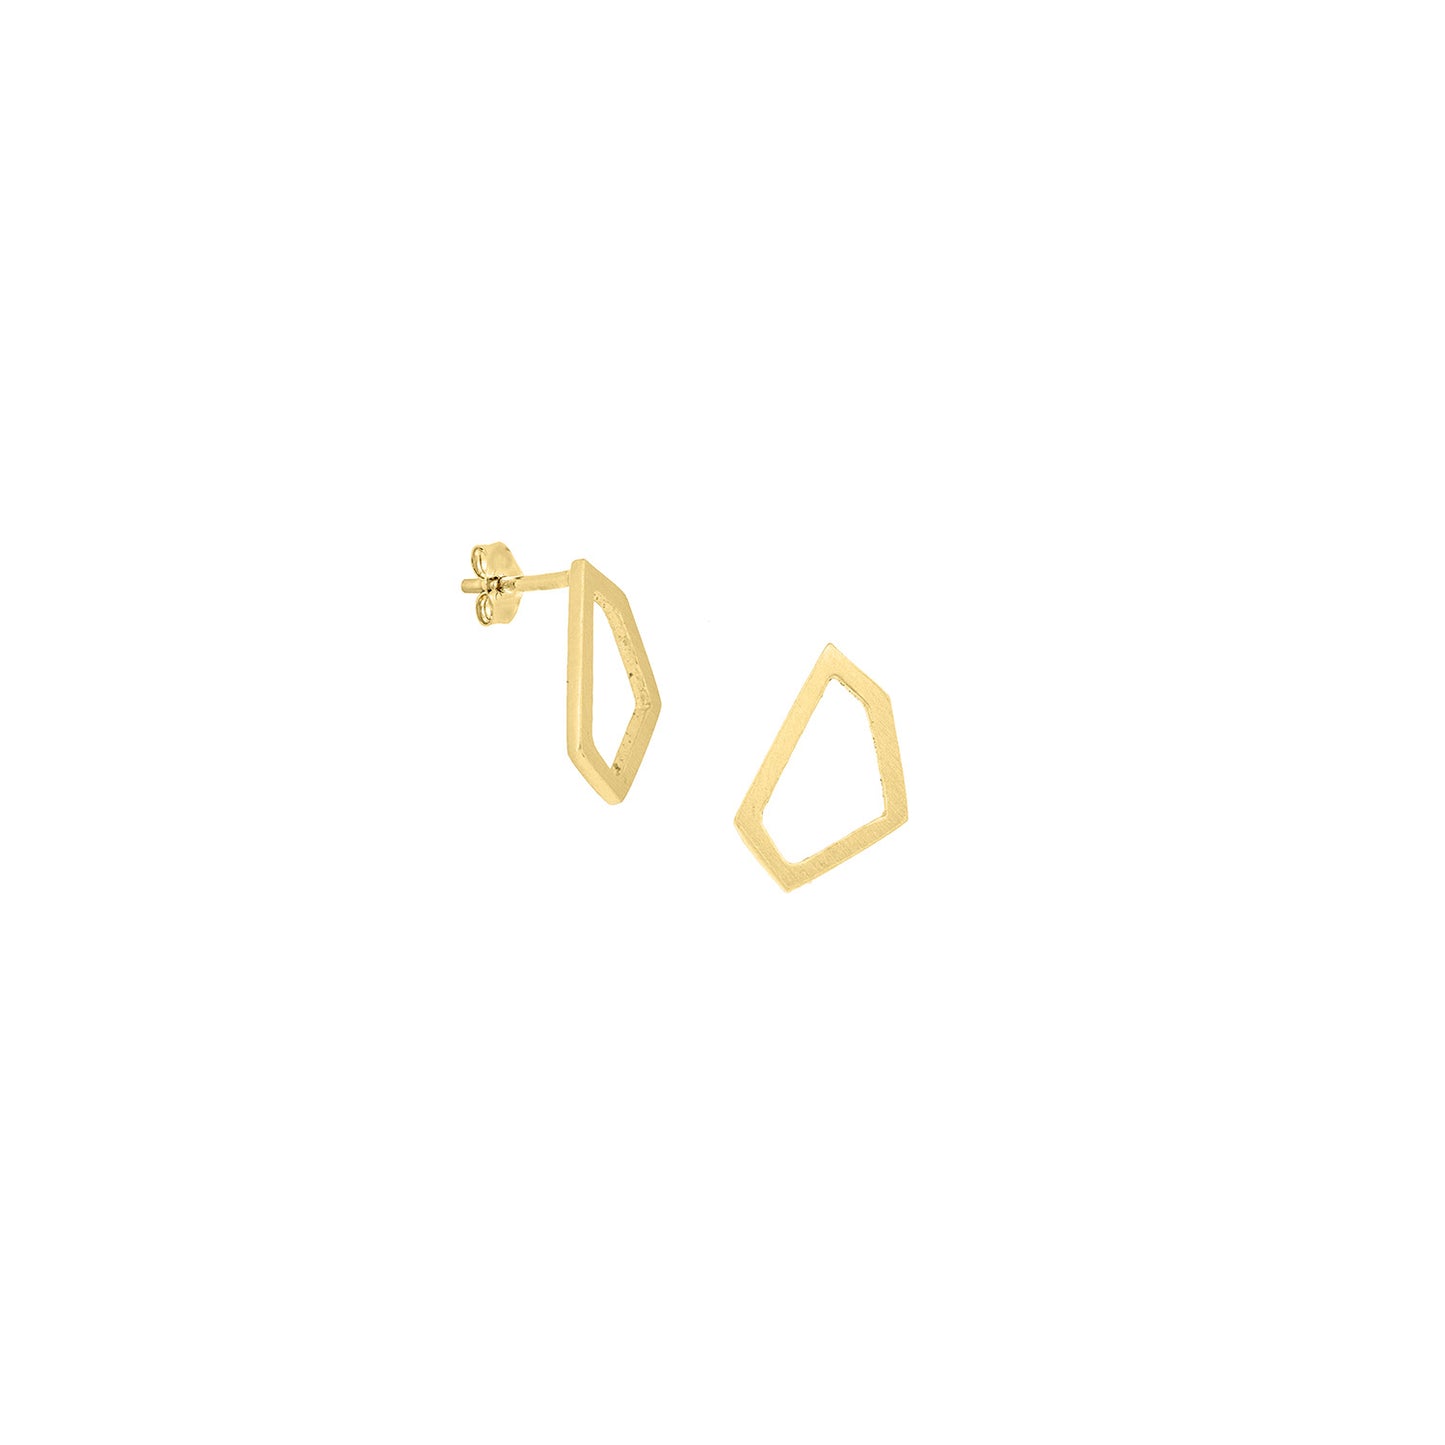 18ct yellow gold open geometric shape stud earrings in a matt finish